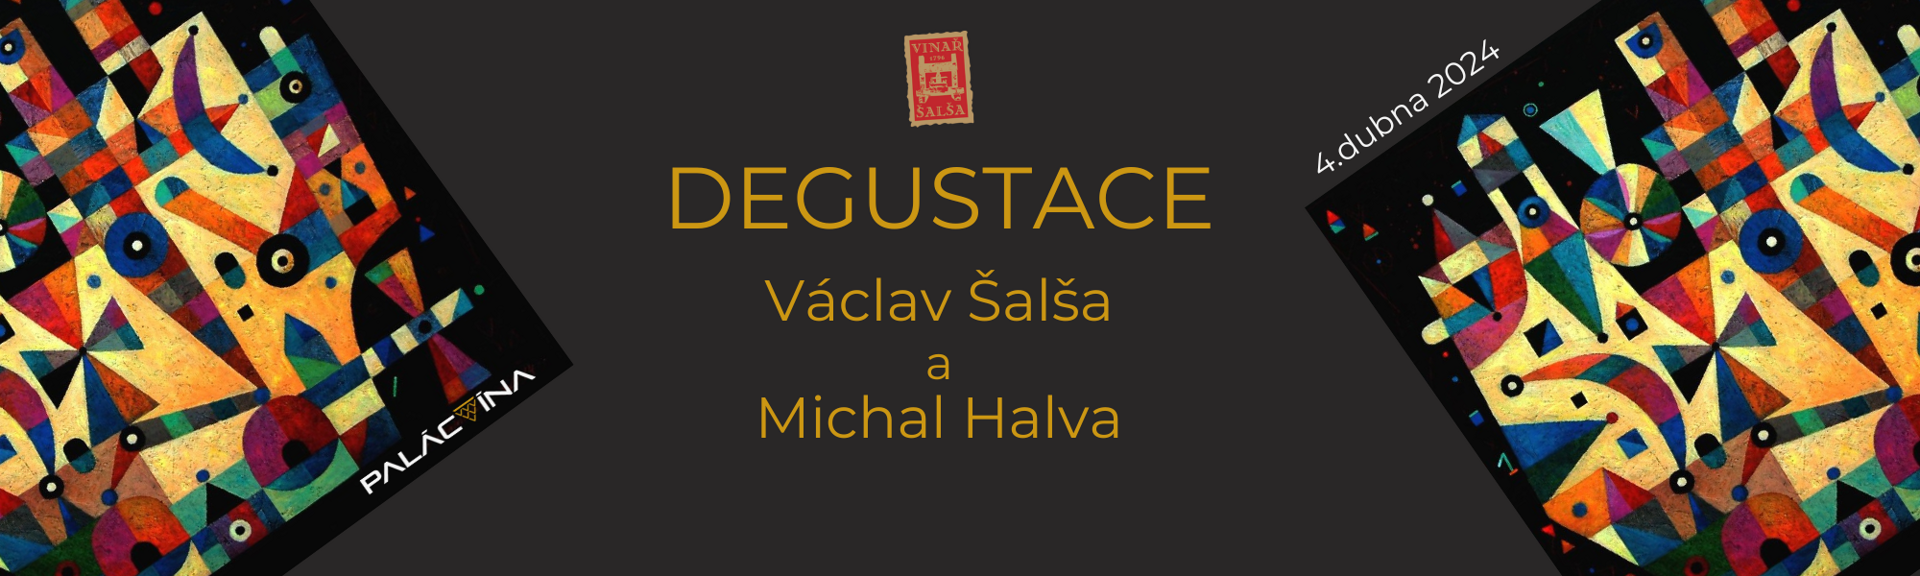 degustace_salsa_palacvina